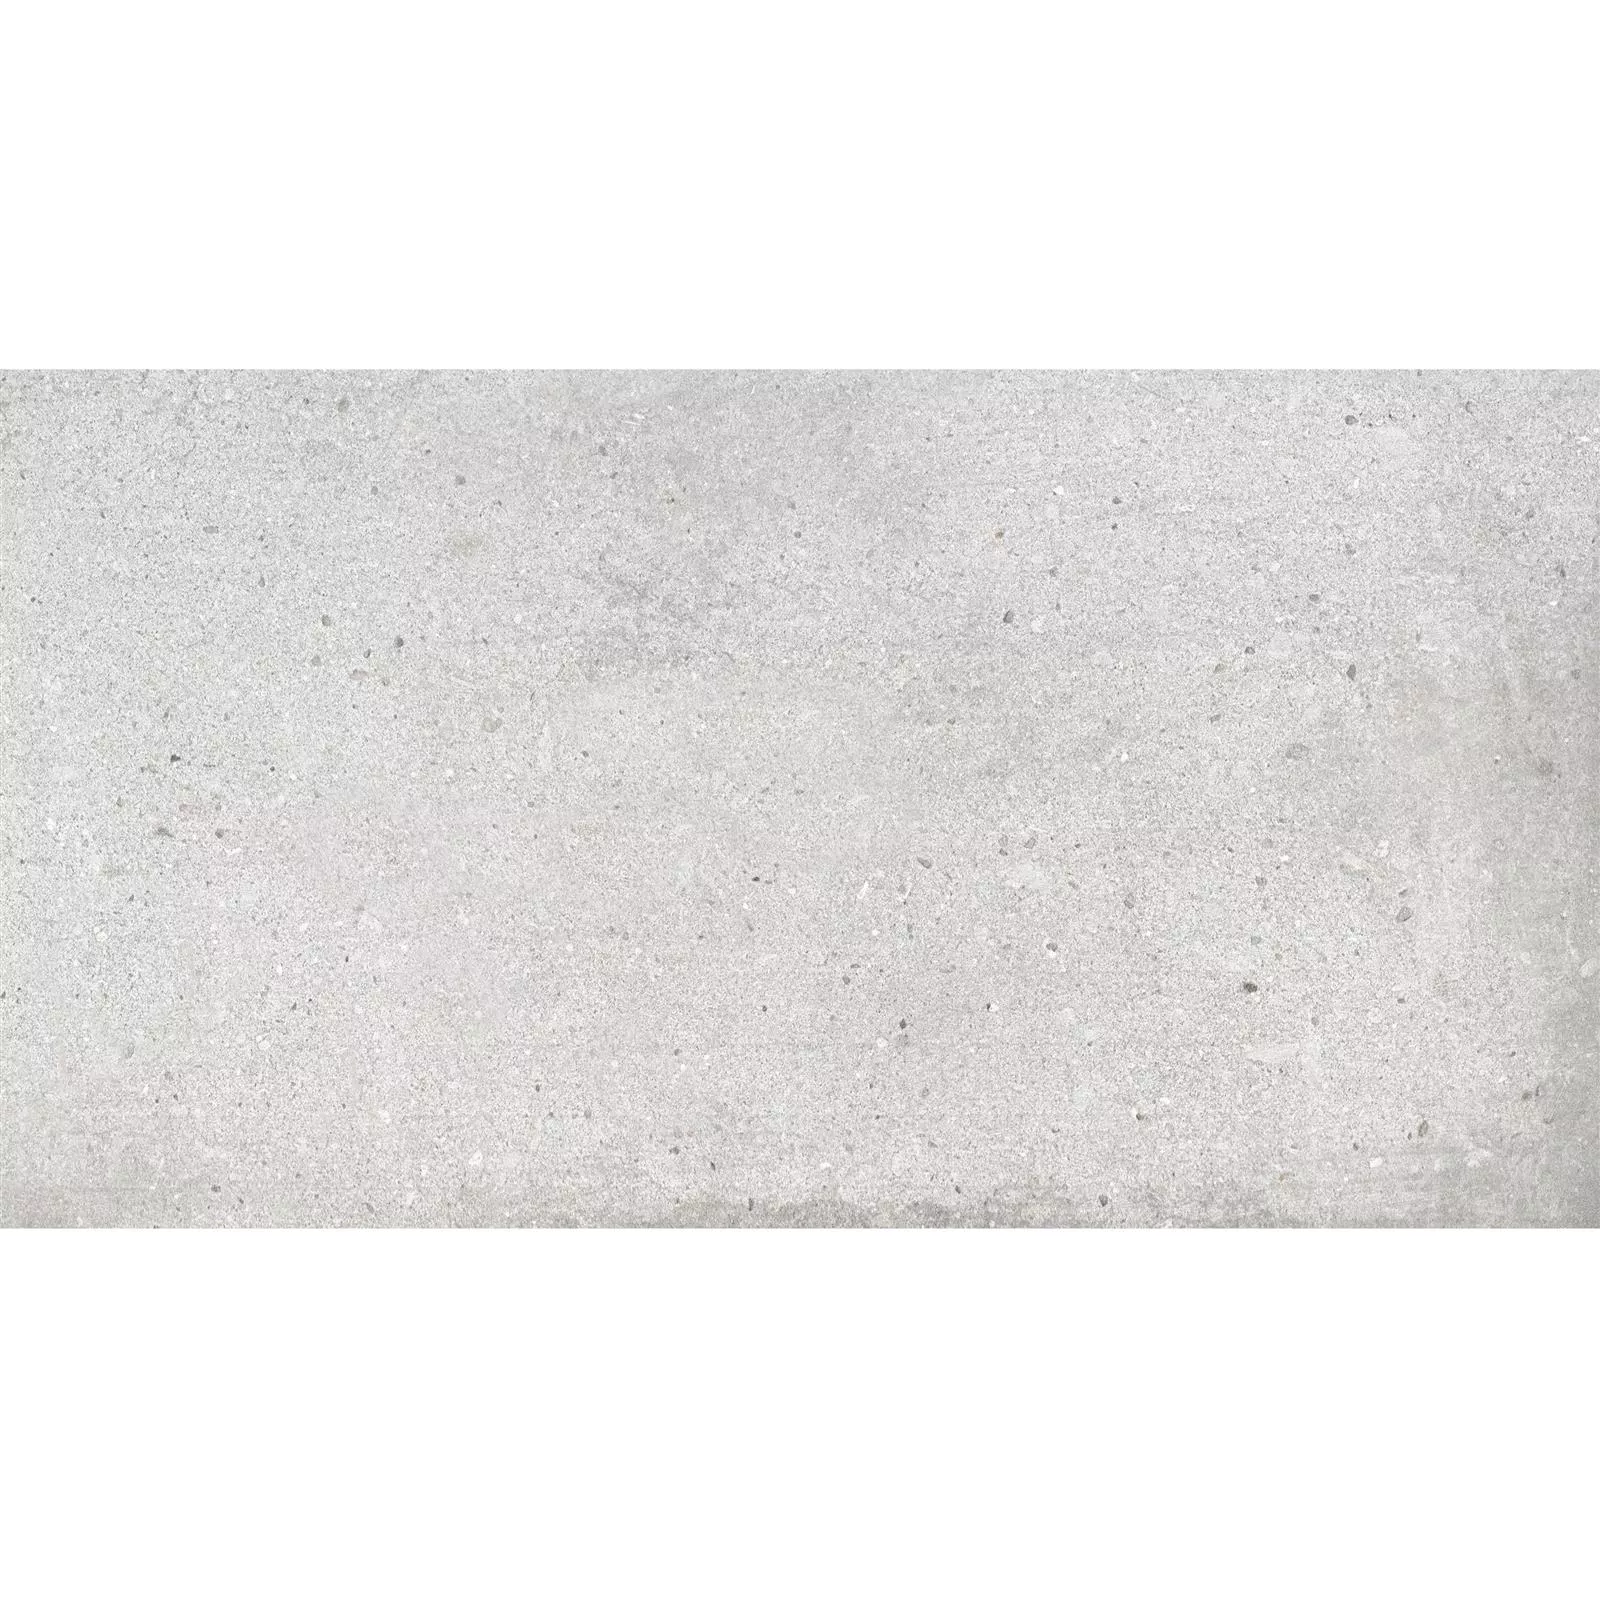 Πλακάκια Δαπέδου Freeland Πέτρινη Όψη R10/B Ανοιχτό Γκρι 30x60cm